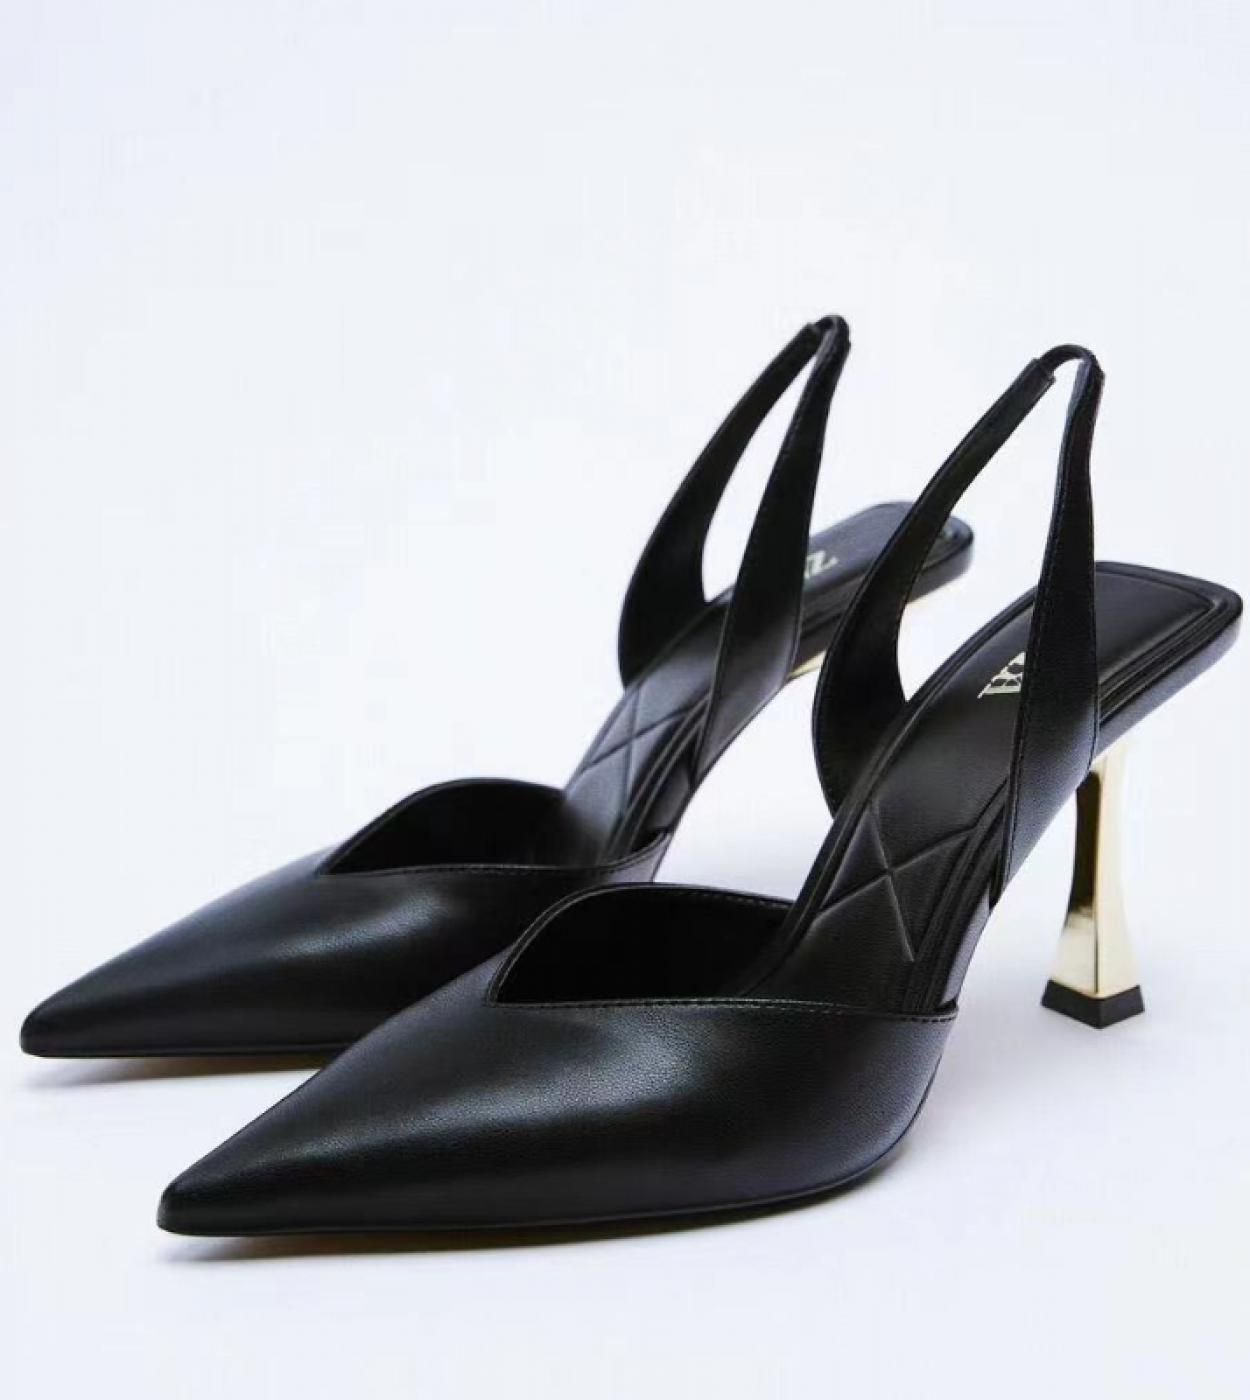 עקבים שחורים מחודדים רצועה עקבים דקים במיוחד נעליים מחודדות עקבים דקים לנשים